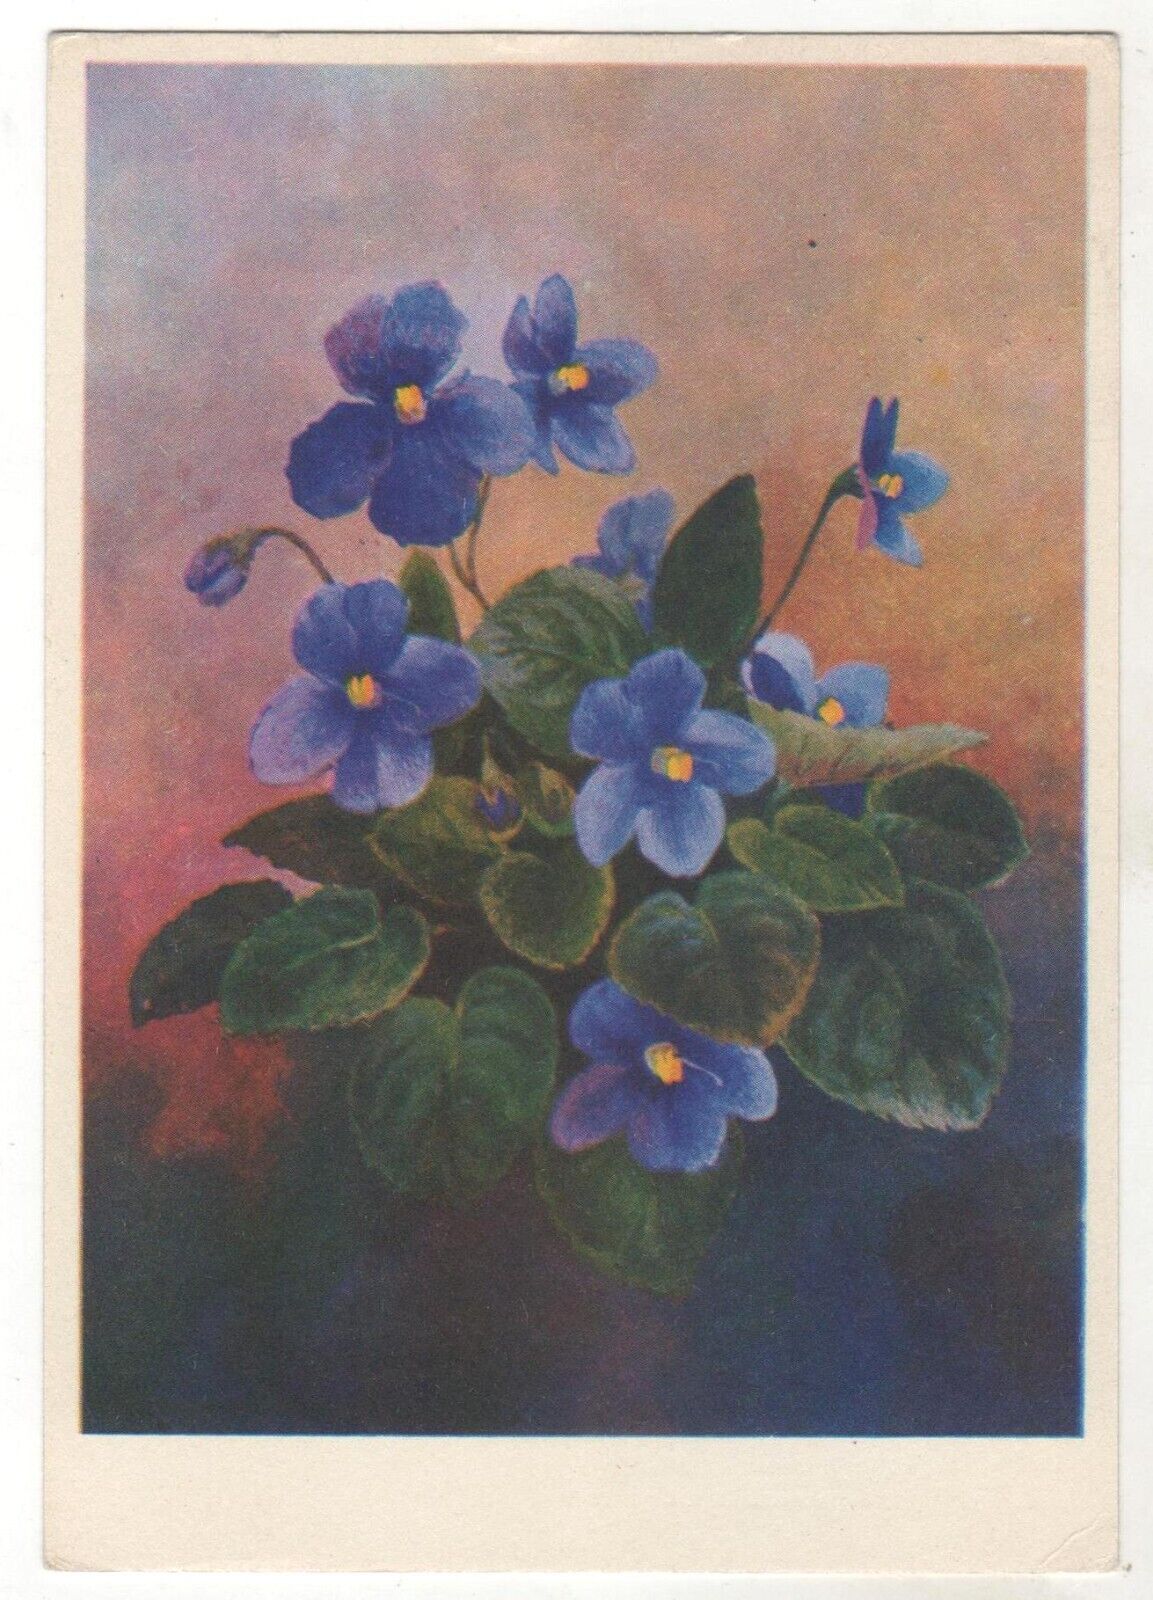 1974 VIOLETS Violet Viola Flowers ART Soviet Russian postcard Old Vintage